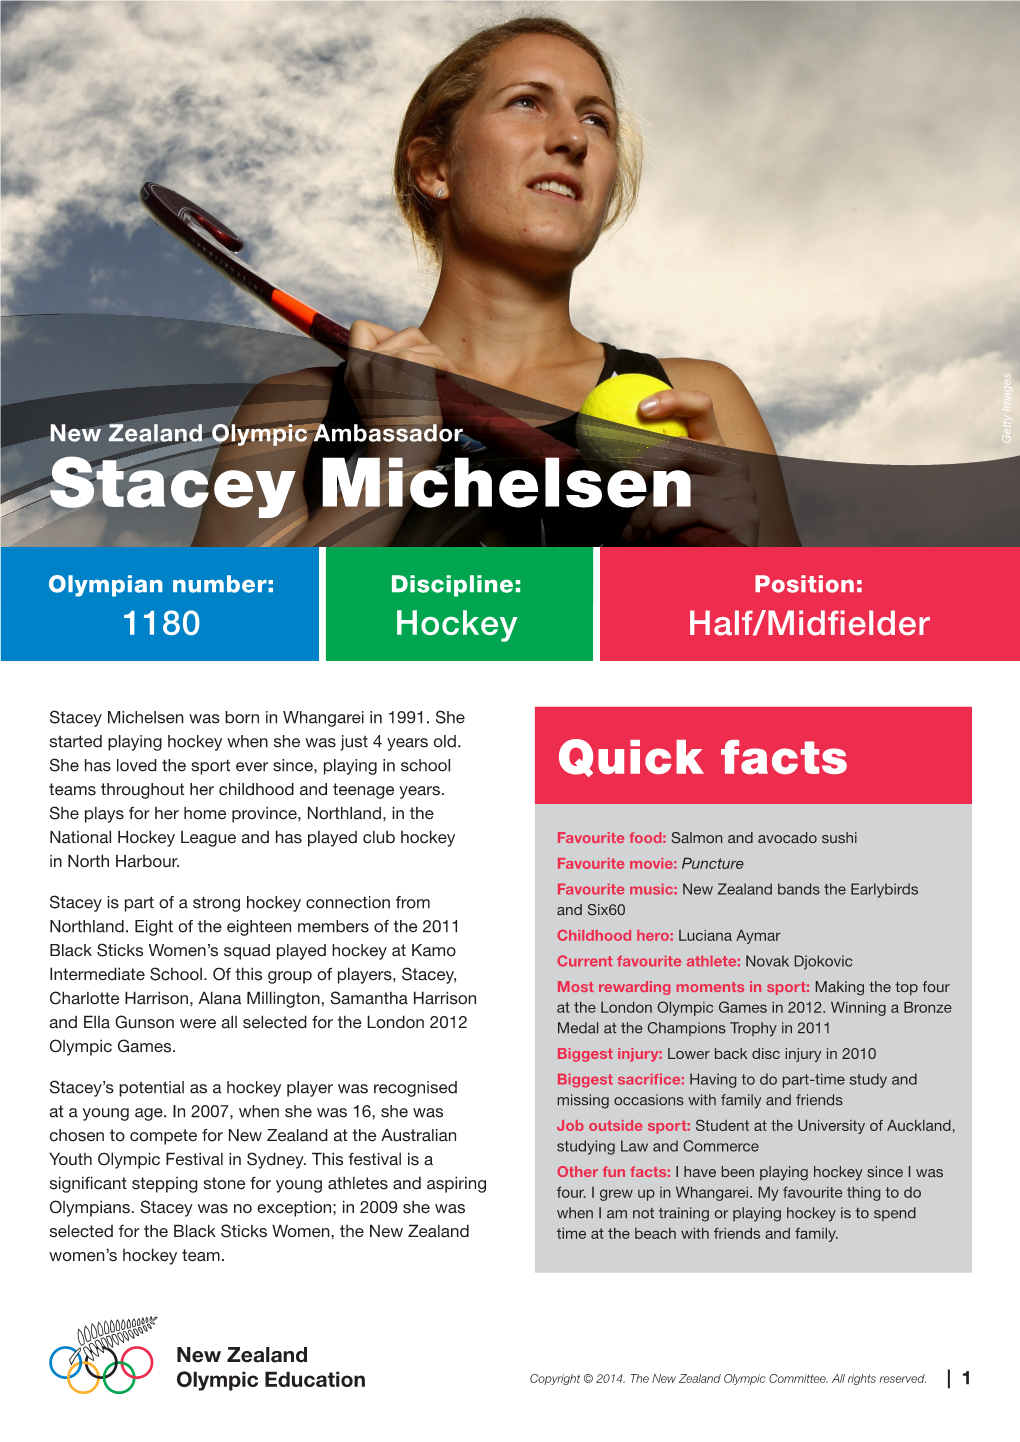 Stacey Michelsen